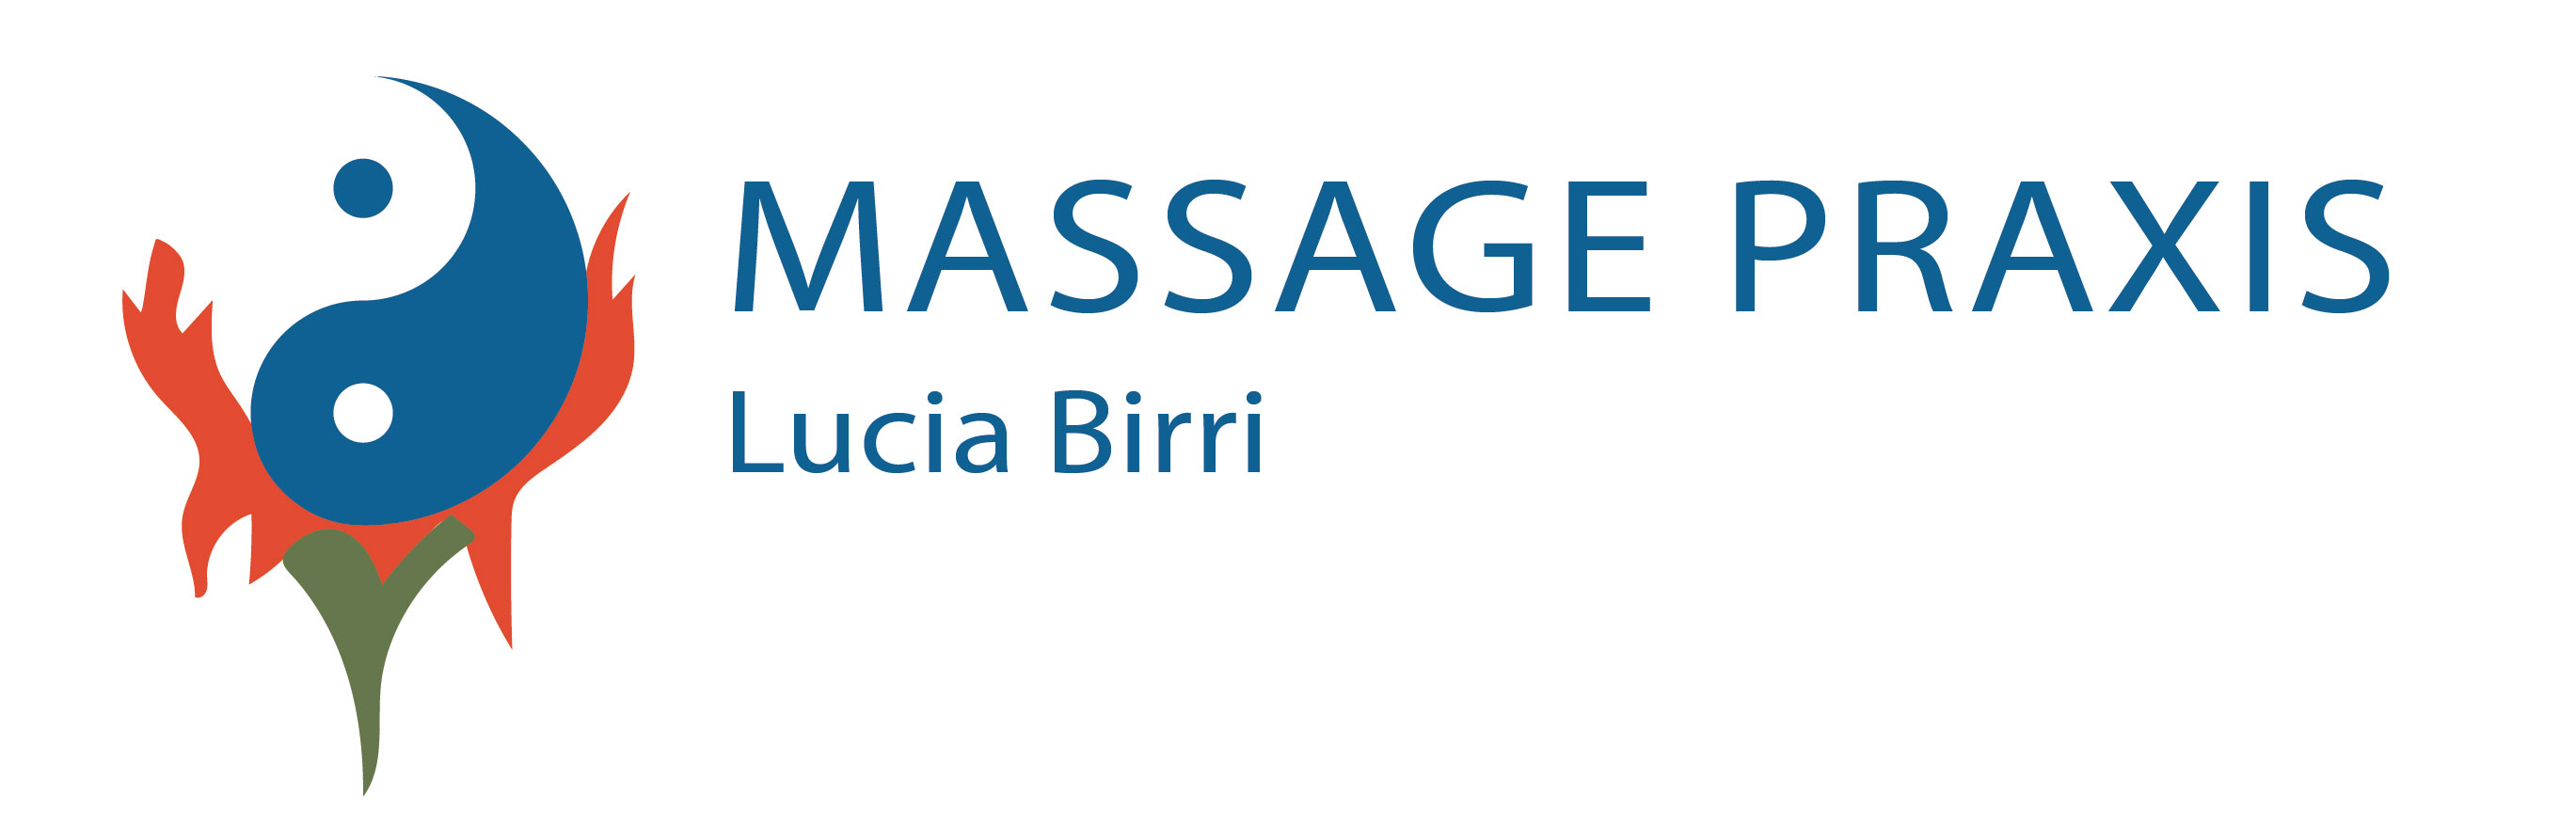 Massagepraxis Lucia Birri